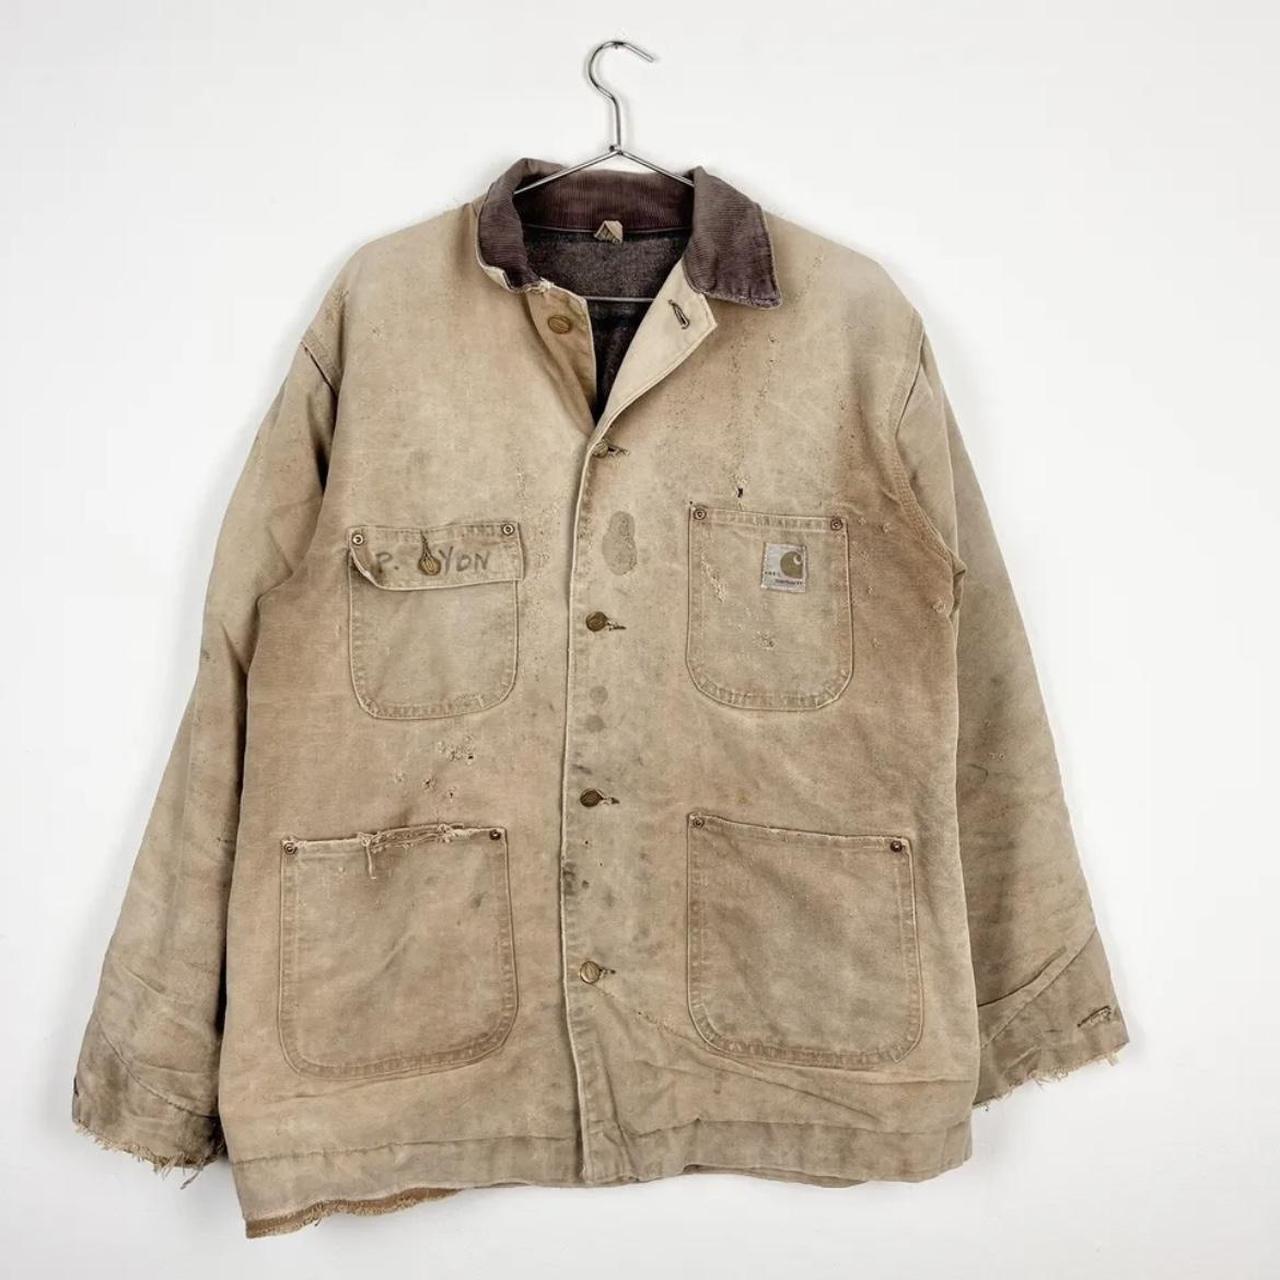 Vintage 70s Carhartt Jacket Chore Coat Thrashed... - Depop